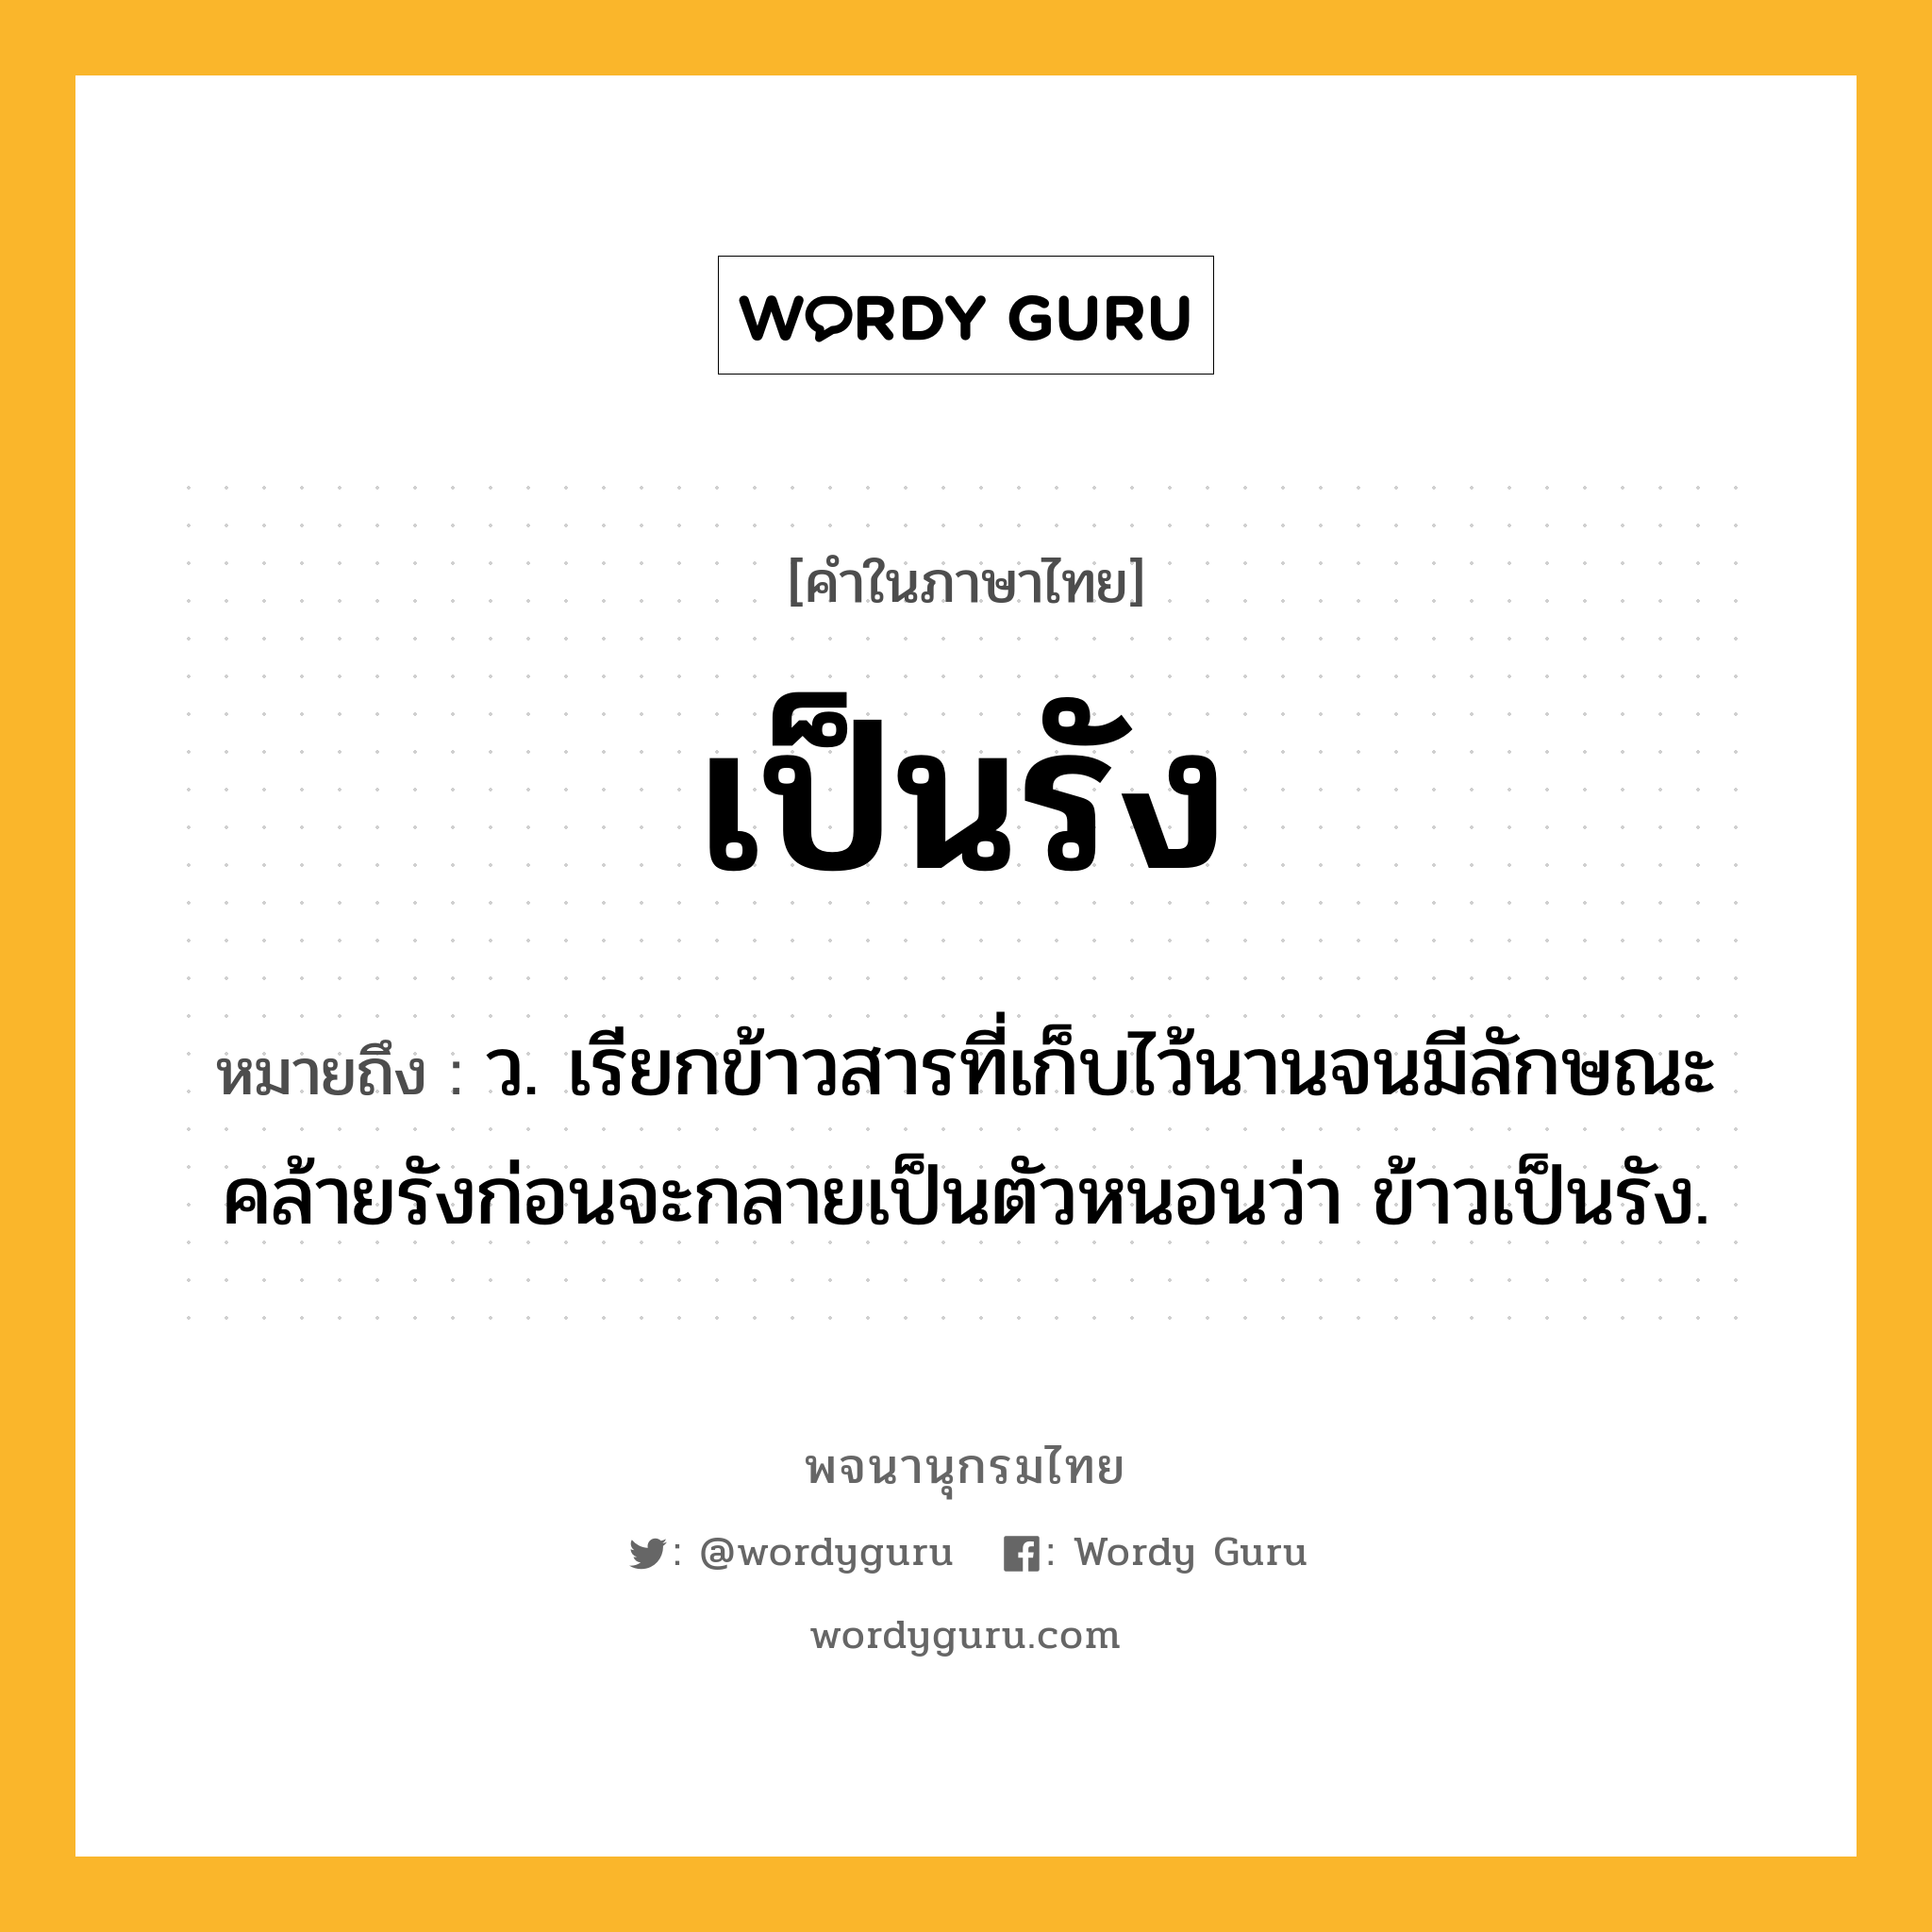 เป็นรัง หมายถึงอะไร?, คำในภาษาไทย เป็นรัง หมายถึง ว. เรียกข้าวสารที่เก็บไว้นานจนมีลักษณะคล้ายรังก่อนจะกลายเป็นตัวหนอนว่า ข้าวเป็นรัง.